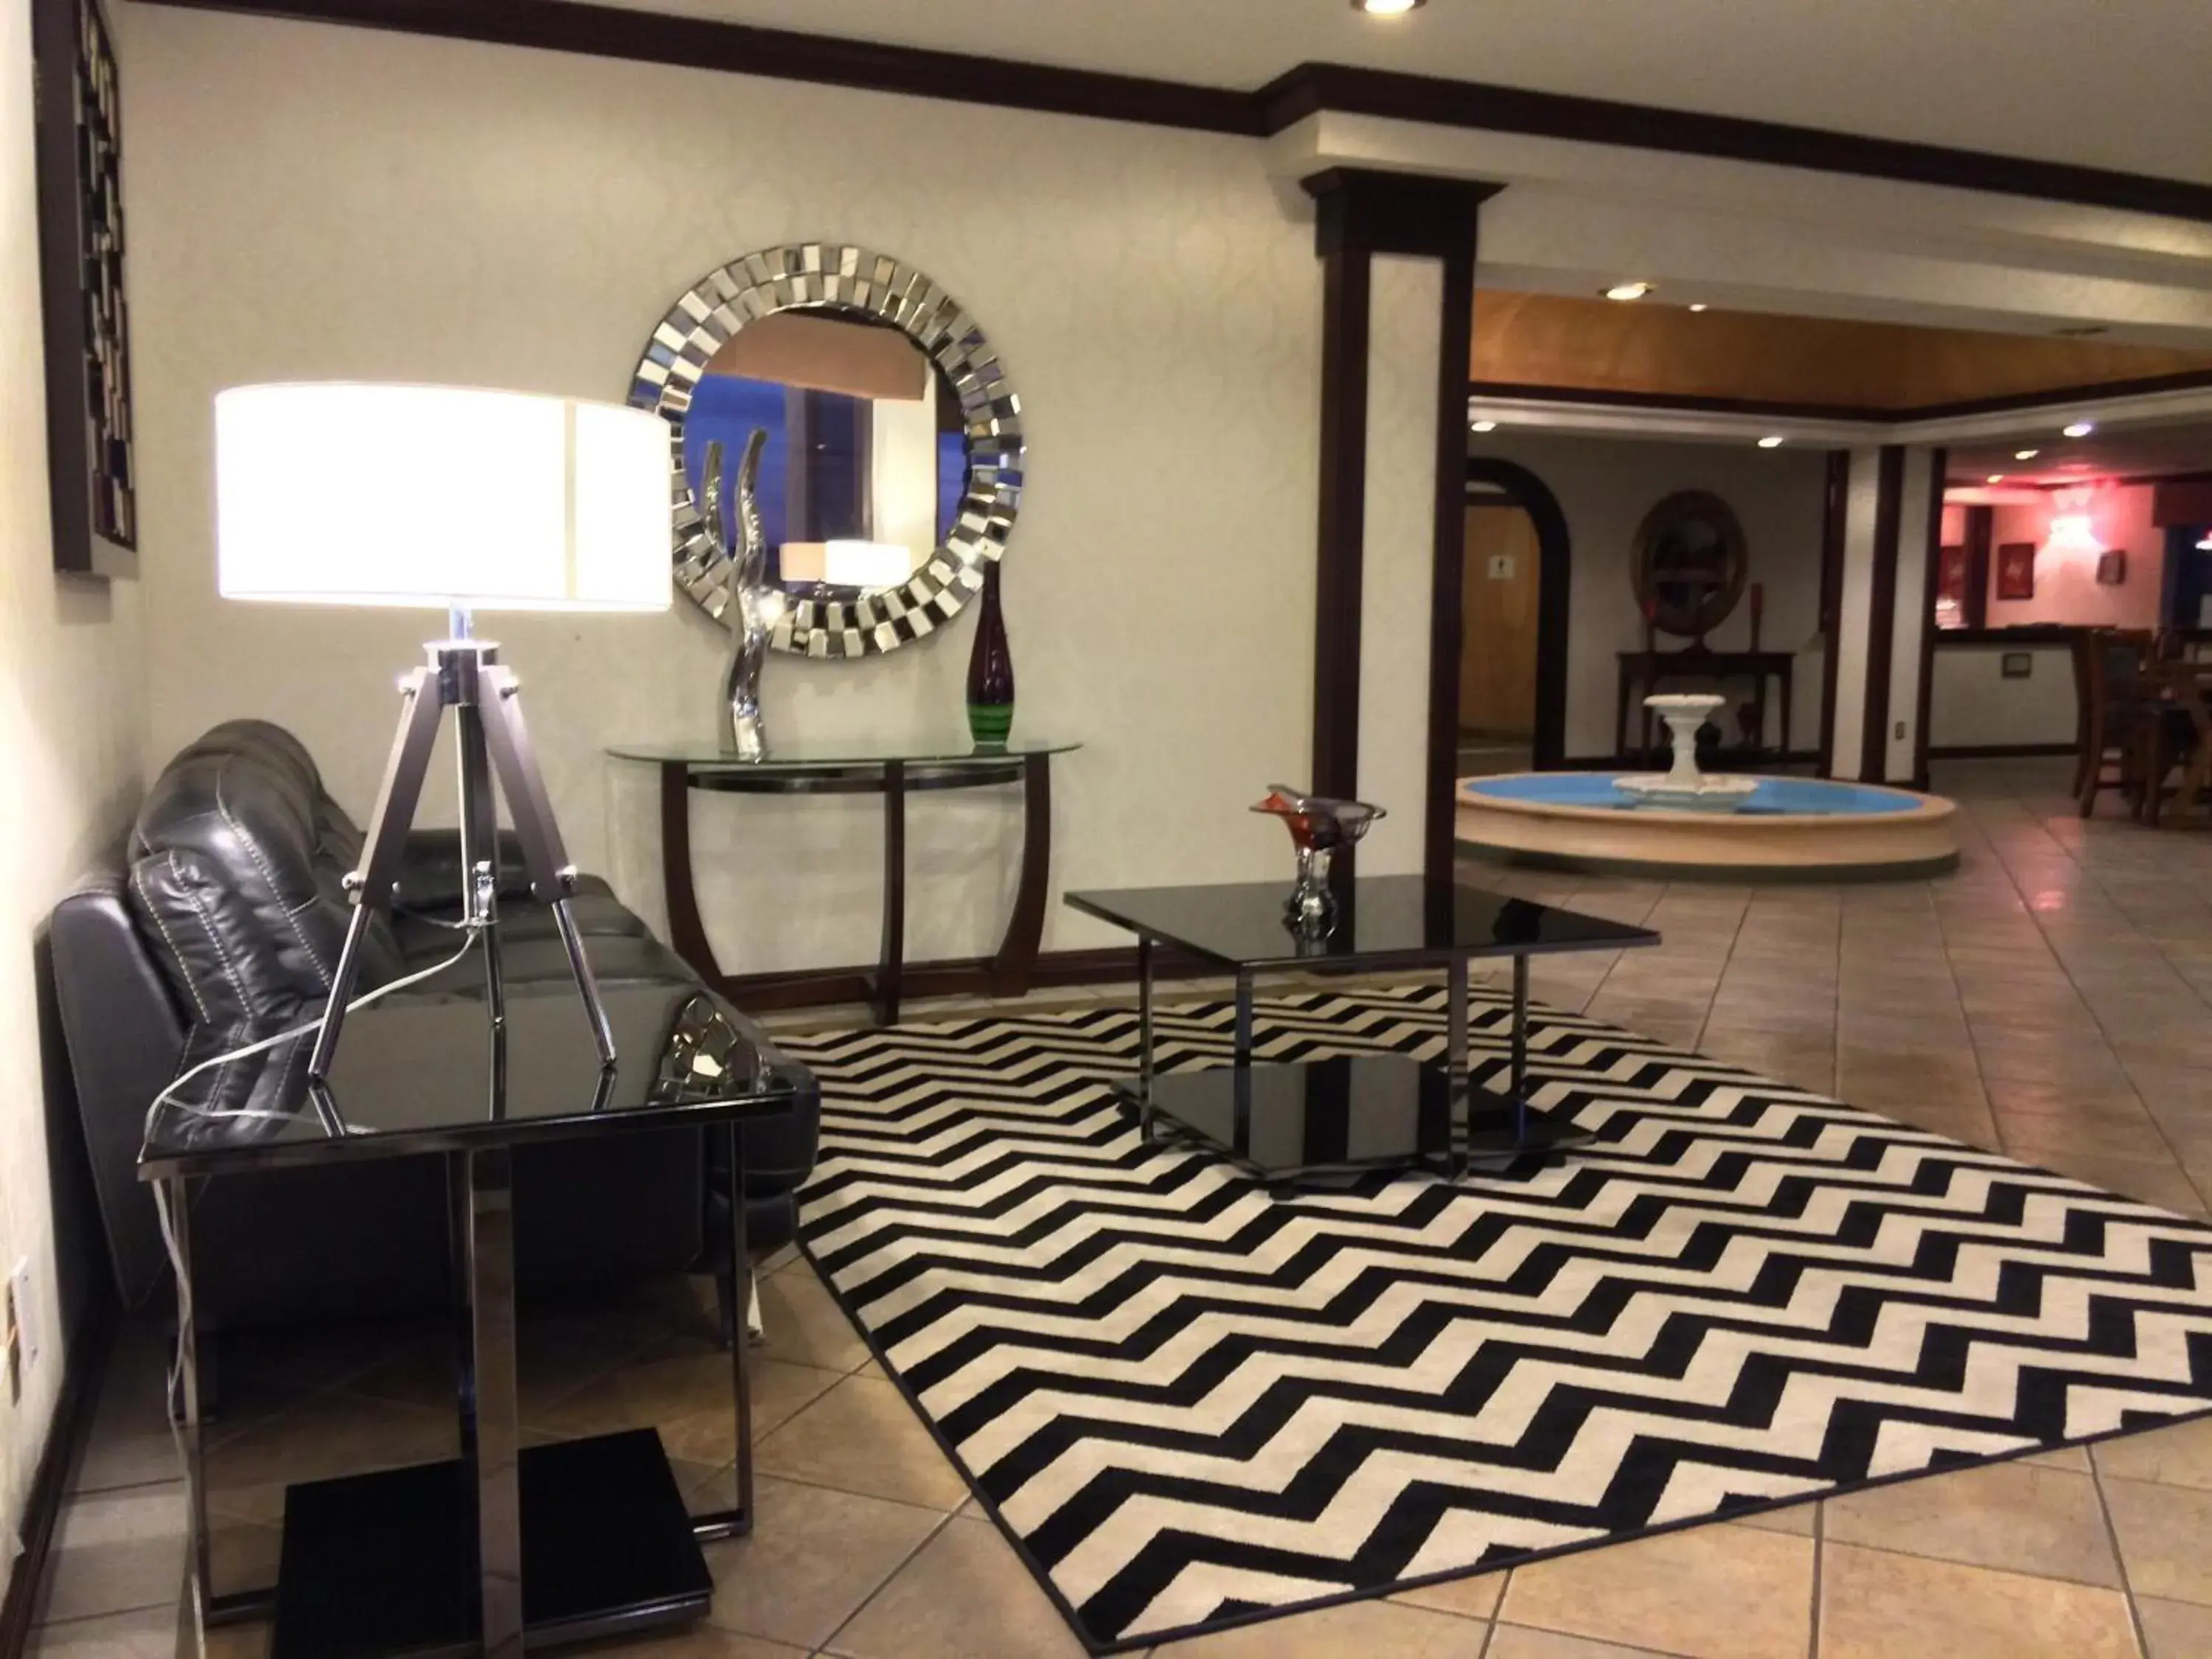 Lobby or reception in Ramada by Wyndham Davenport Orlando South